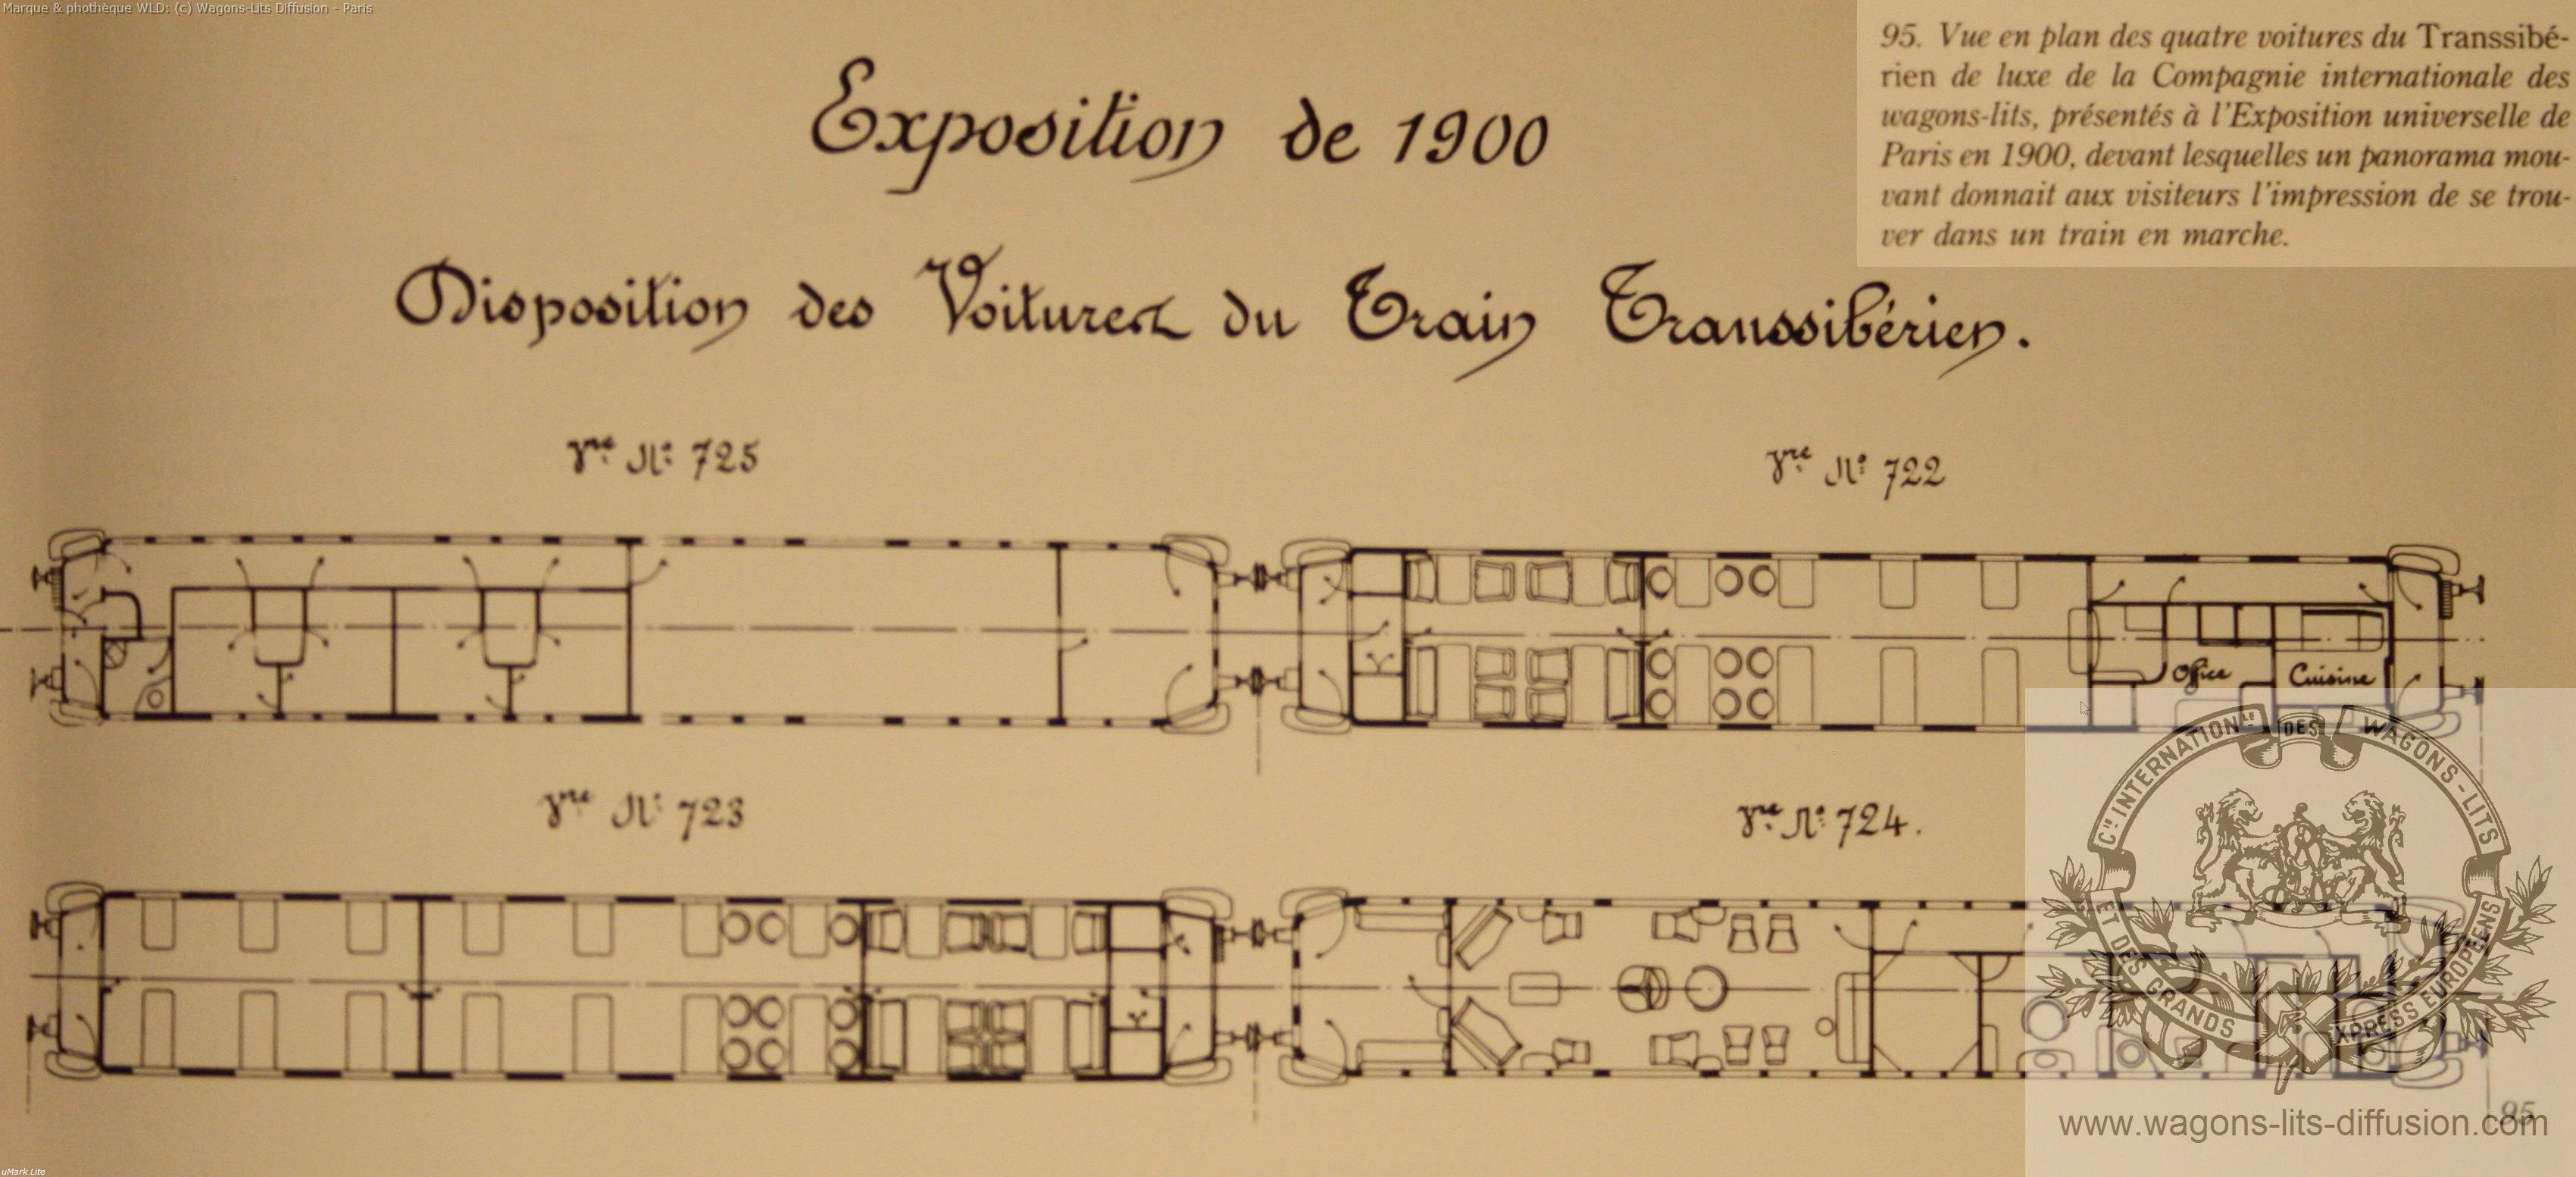 Wl expo universelle paris 1900 transsiberien 2 